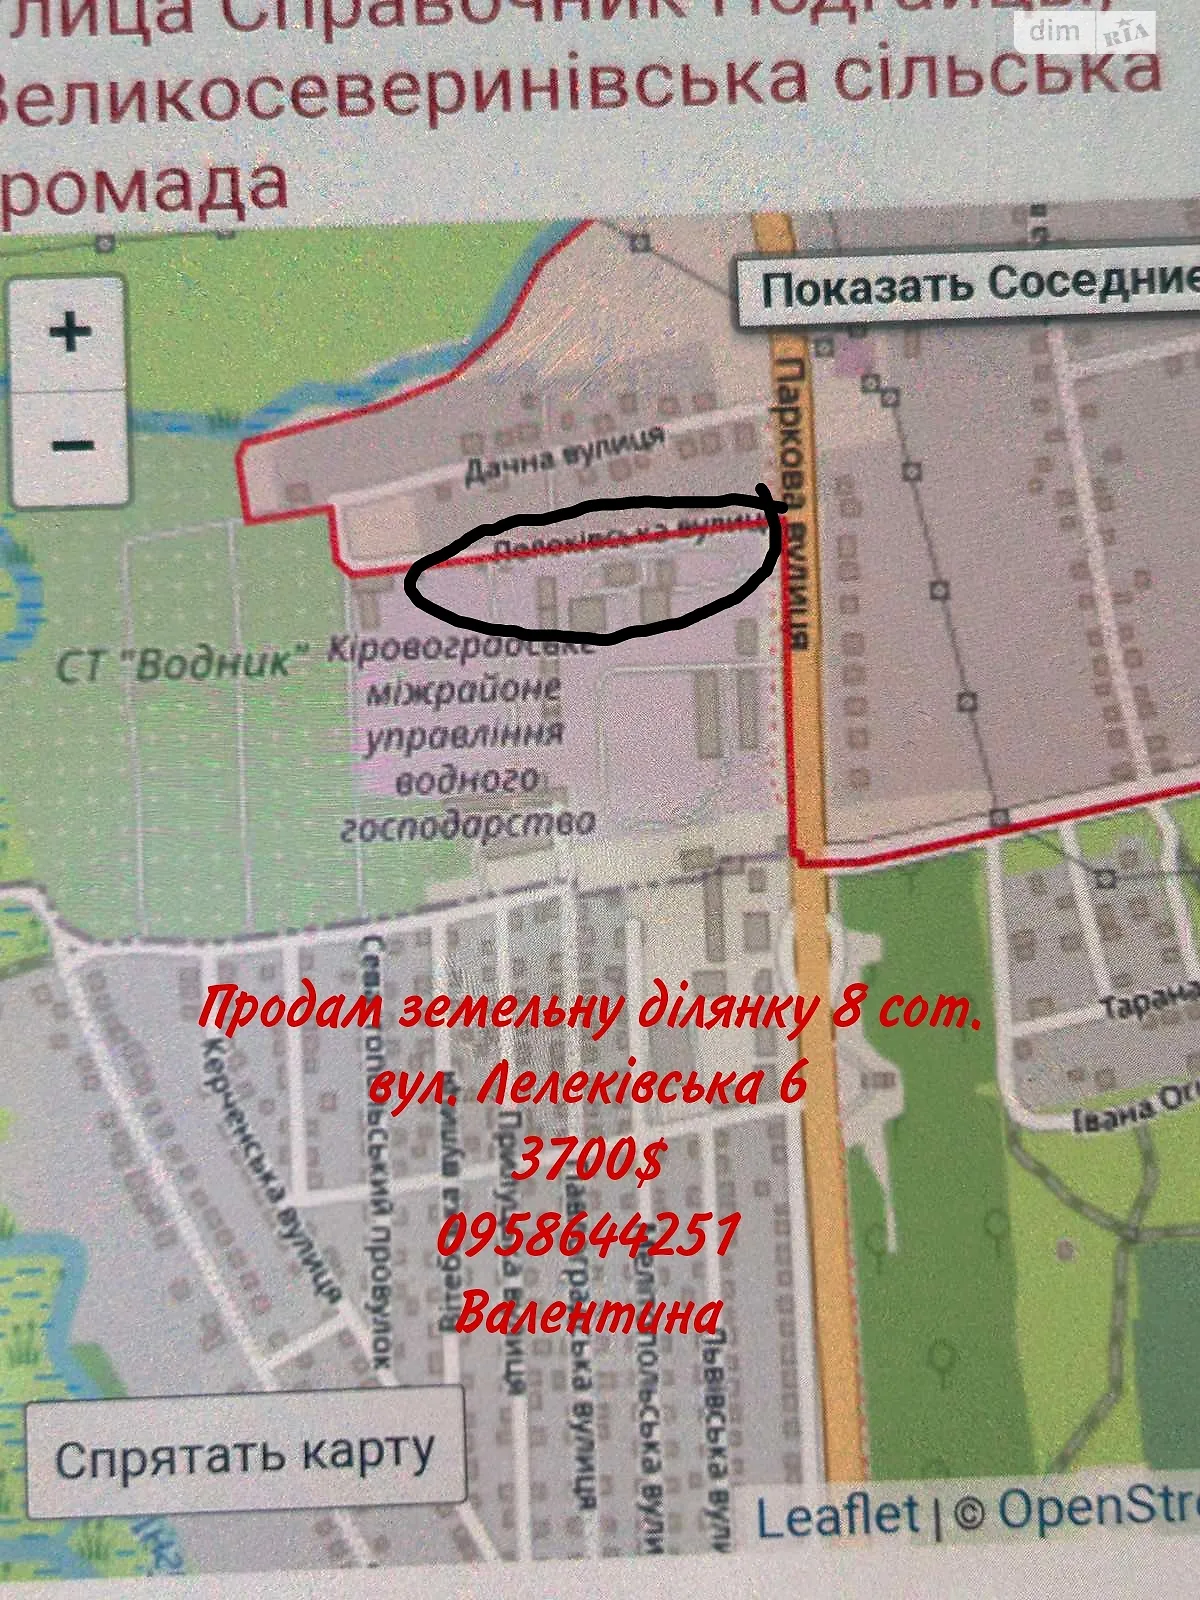 Продается земельный участок 8 соток в Кировоградской области, цена: 4700 $